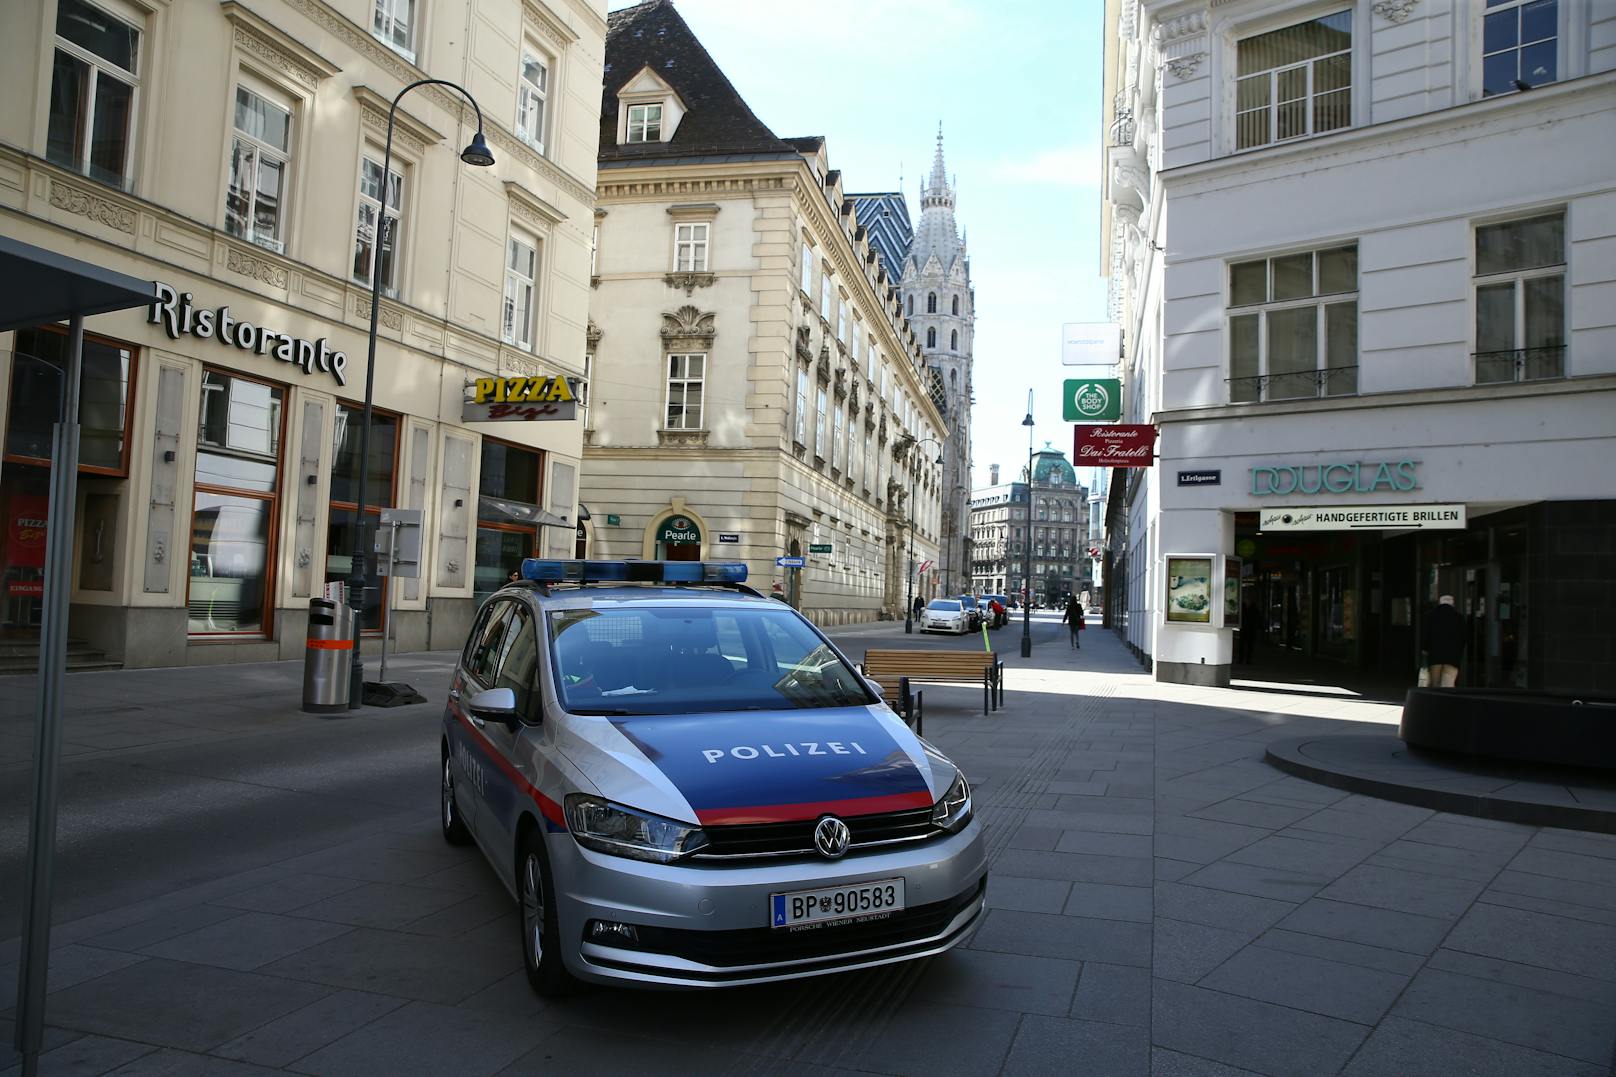 Die Wiener Polizei sieht sich Misshandlungsvorwürfen ausgesetzt. (Symbolbild)